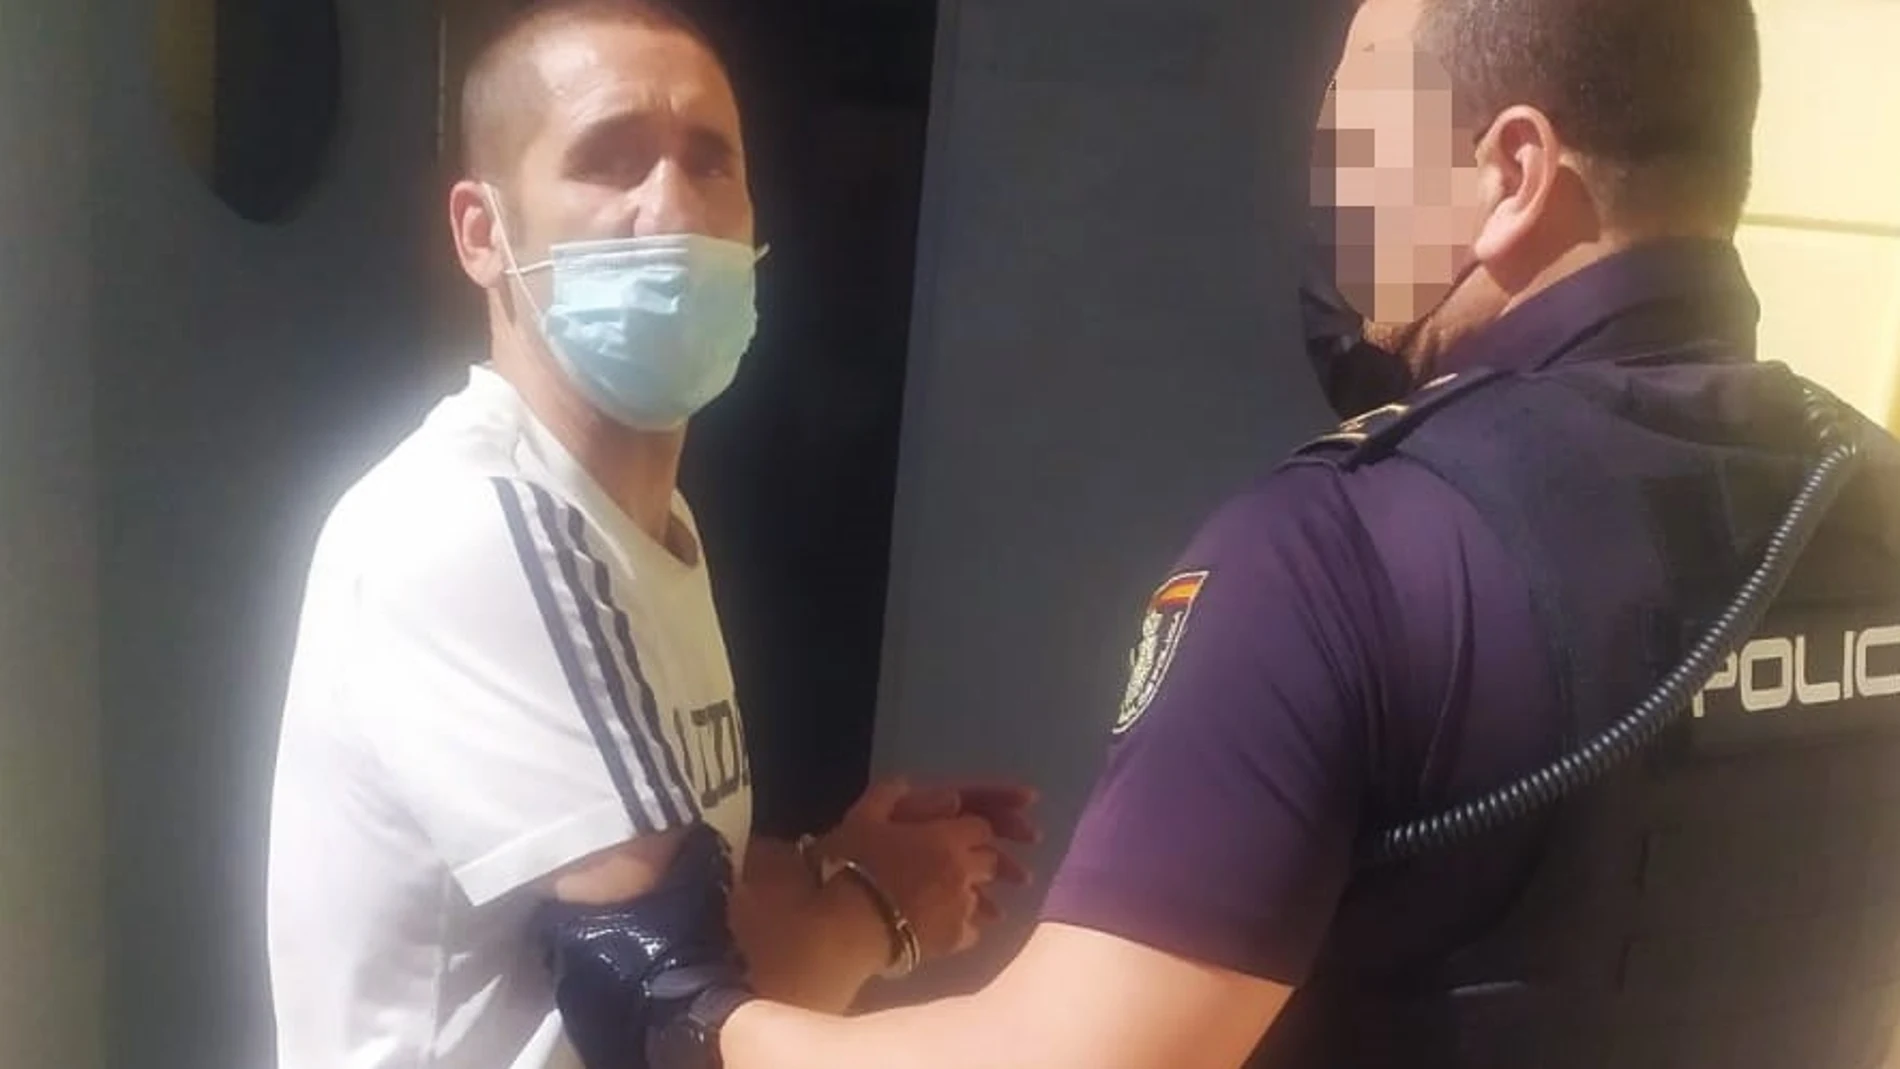 La Policía Nacional ha detenido en Las Palmas de Gran Canaria a Poli Díaz, acusado de haber dado una paliza a su pareja